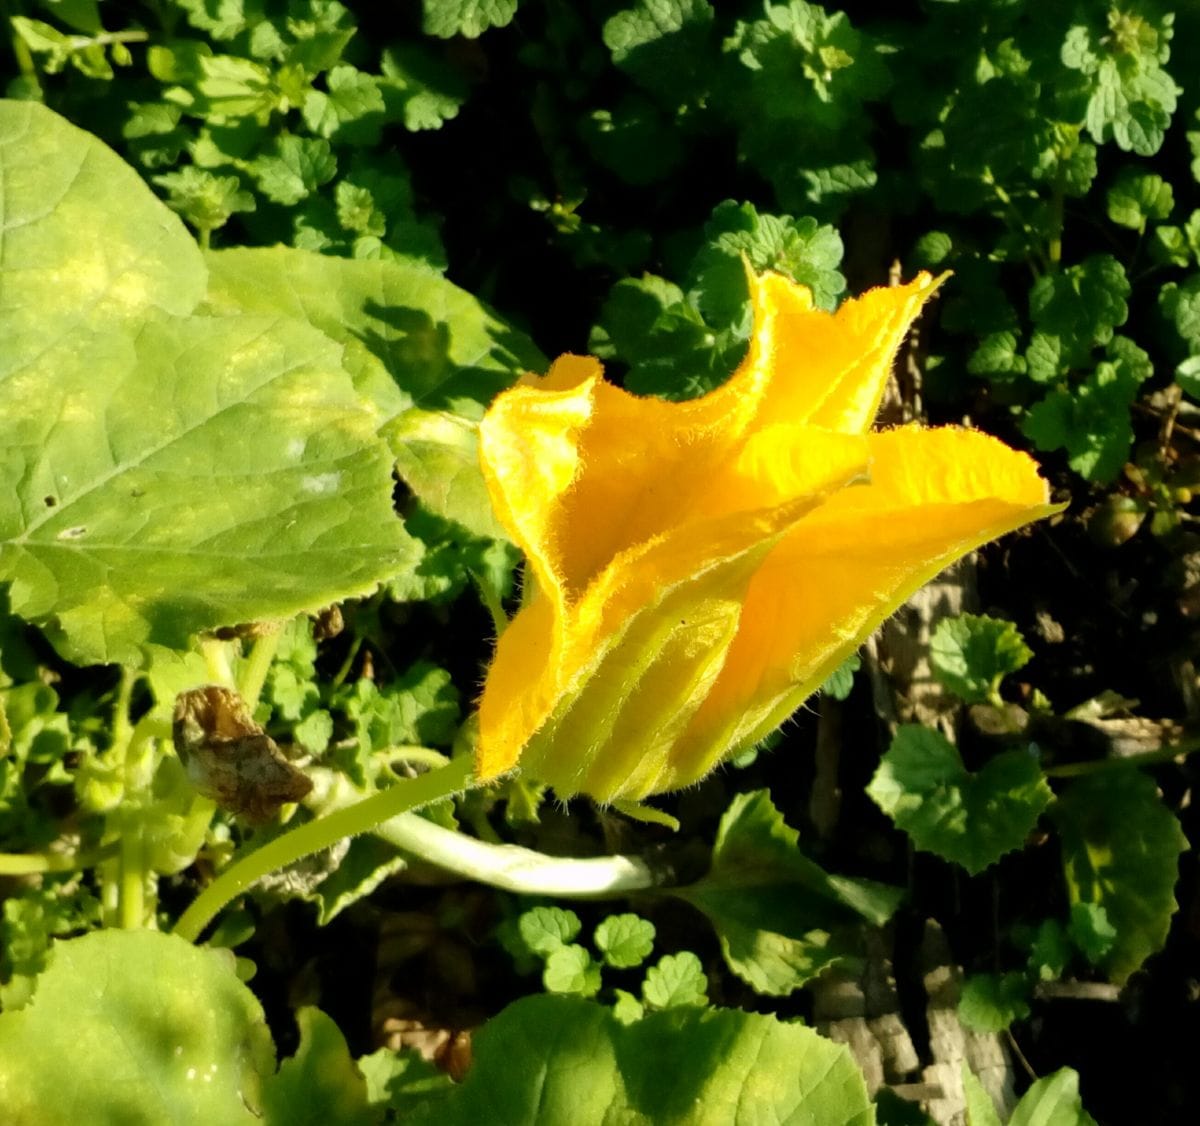 通りすがりの畑に黄色い花が咲く野菜を見つけました この野菜 園芸相談q A みんなの趣味の園芸